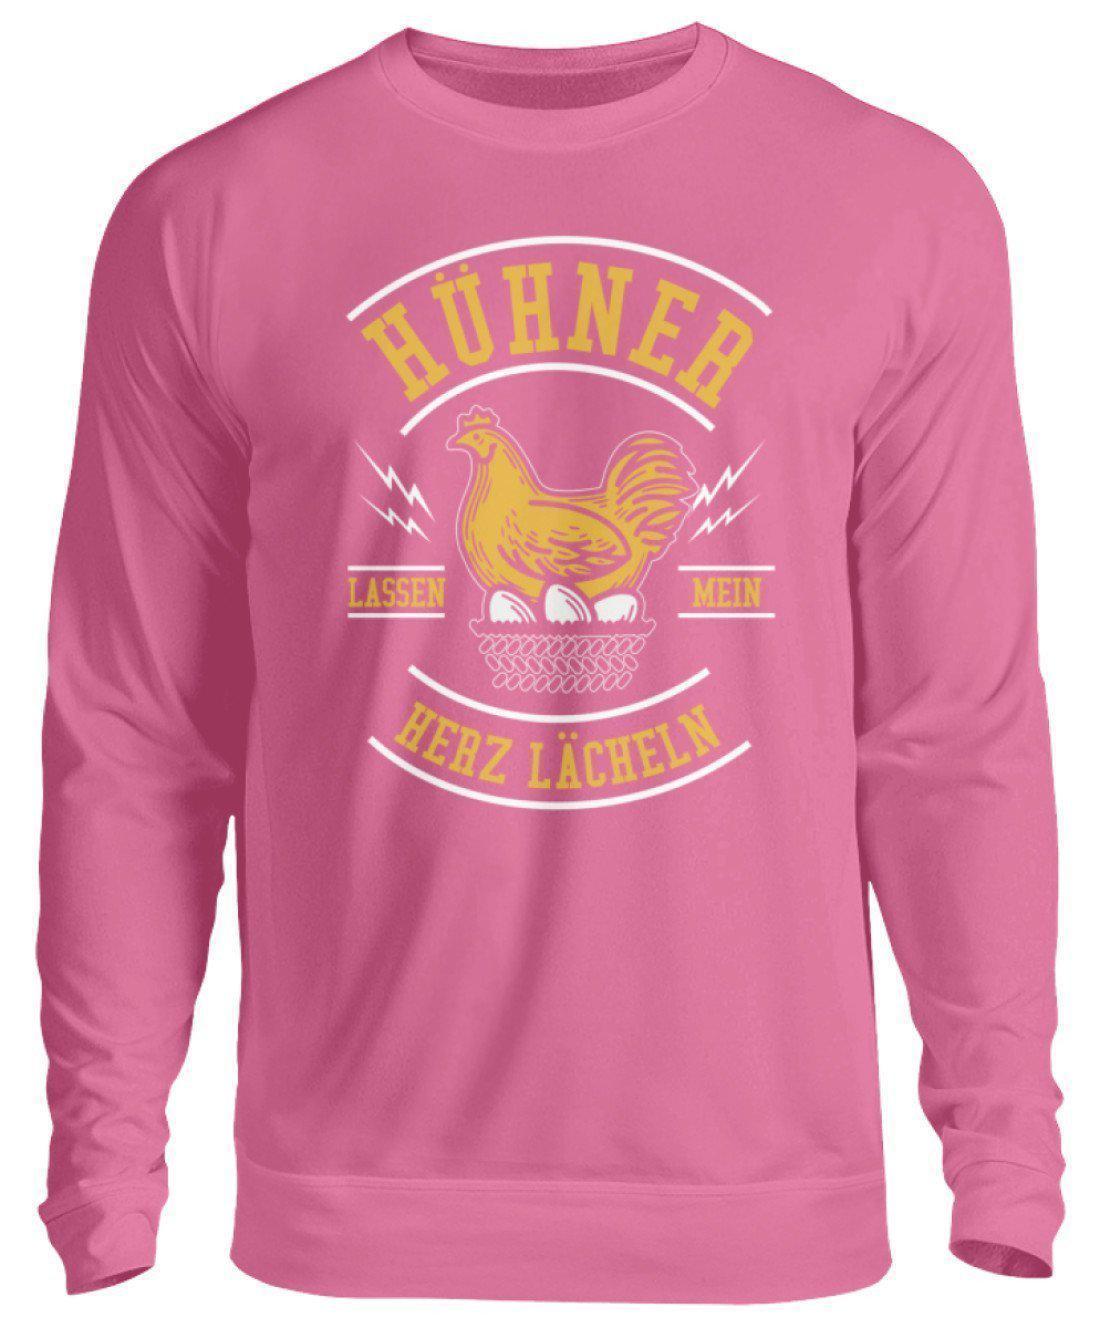 Hühner Herz lächeln · Unisex Sweatshirt Pullover-Unisex Sweatshirt-Candyfloss Pink-S-Agrarstarz